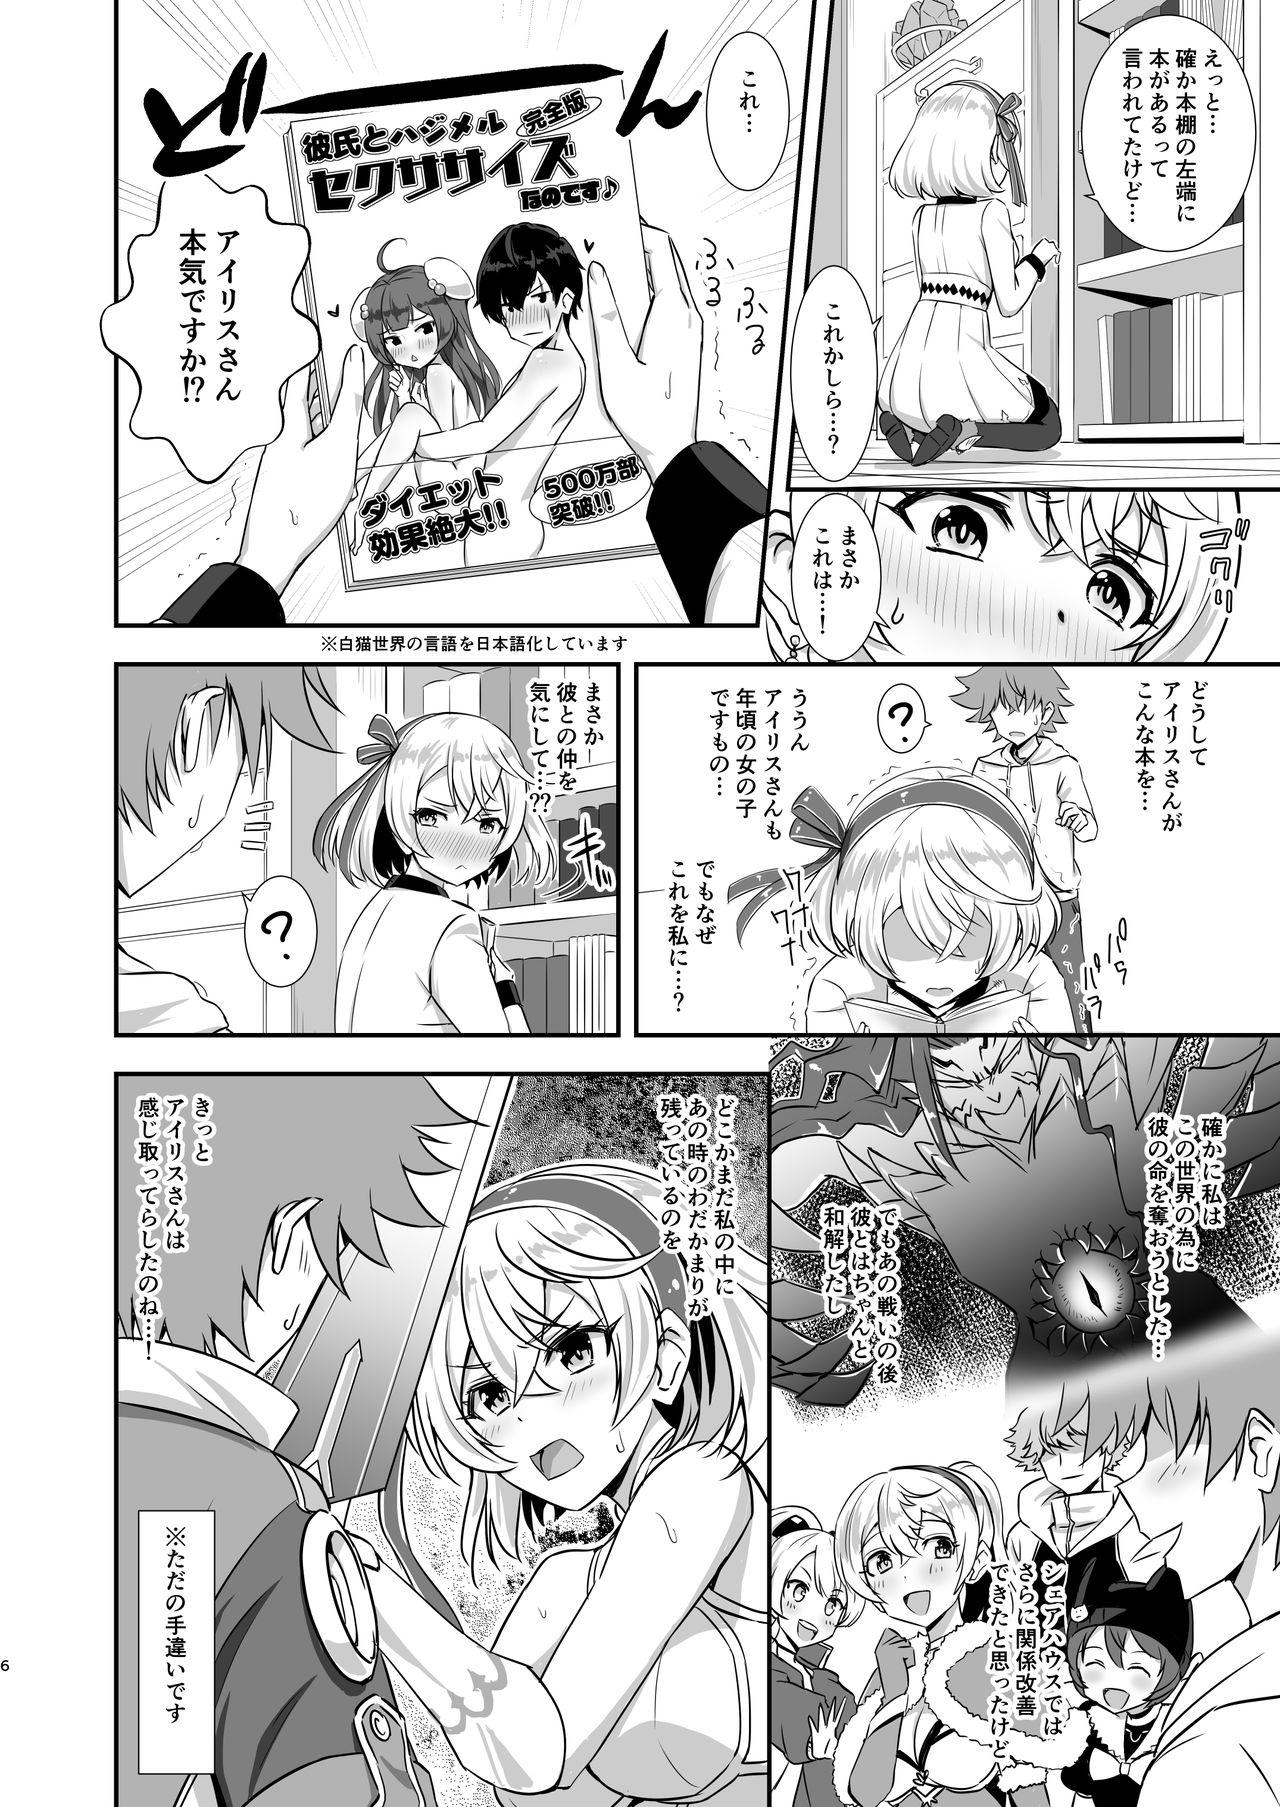 Interacial Erenoa to seiya no sekusasaizu - Shironeko project Boquete - Page 5